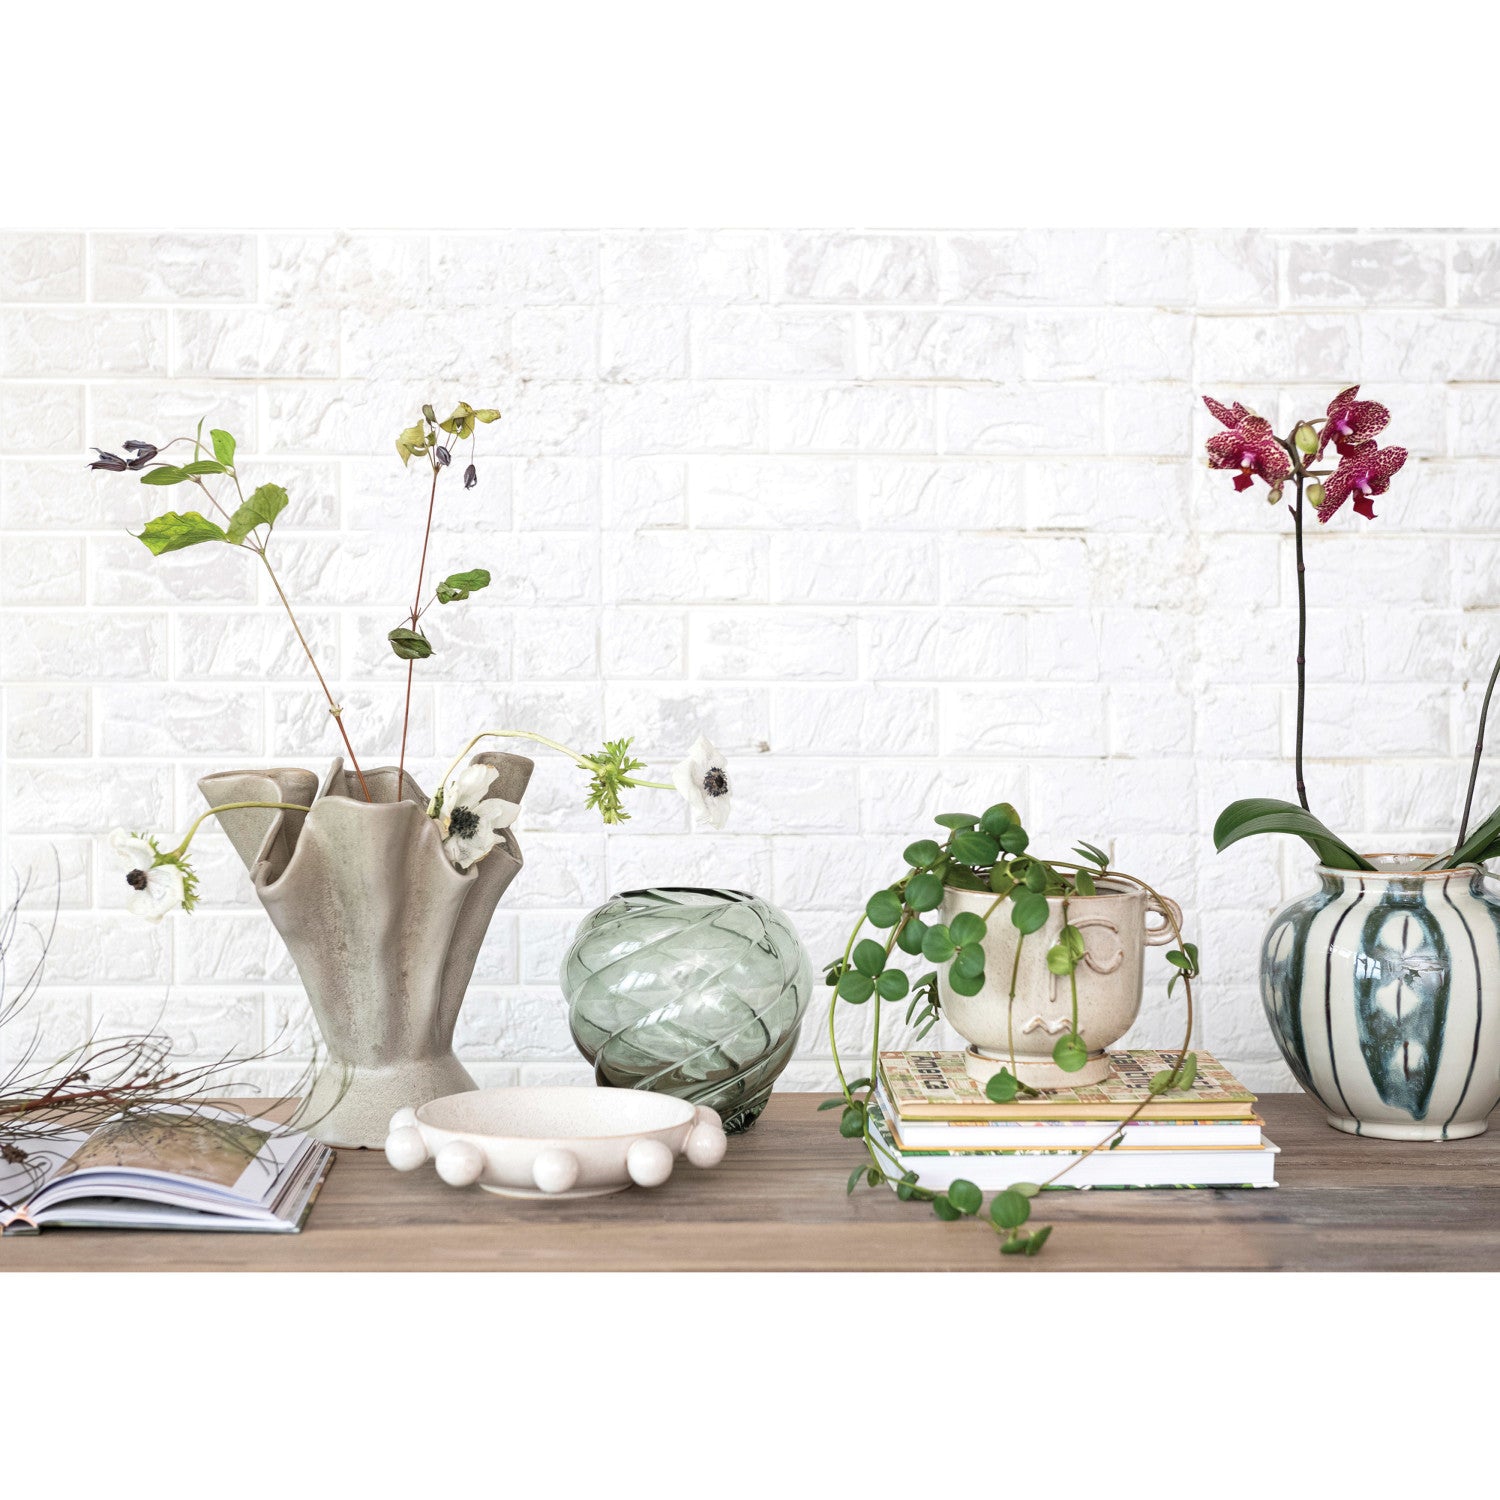 Vase, Ruffled Edge - Danshire Market and Design 